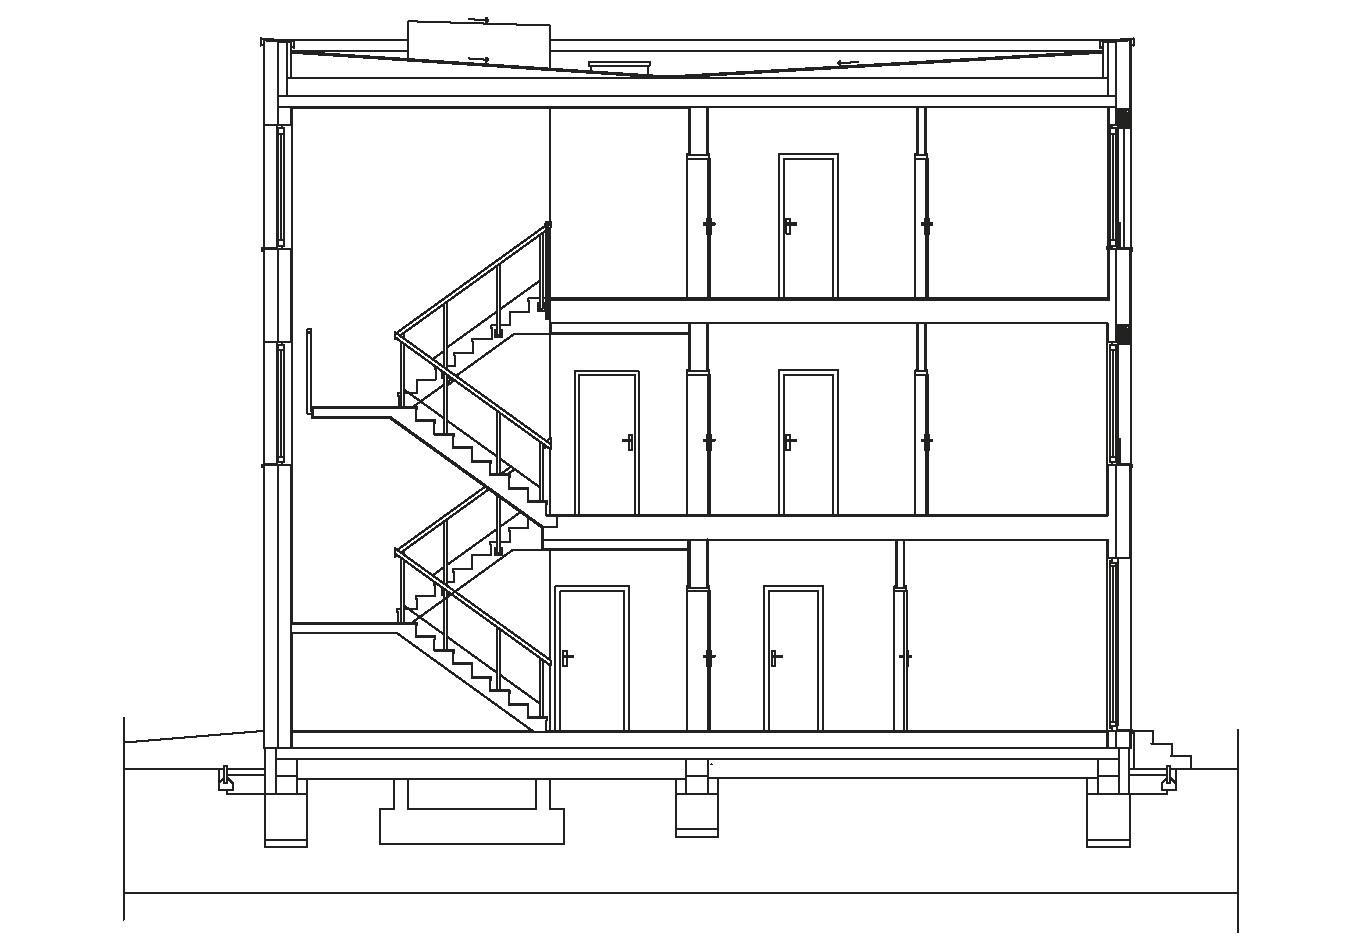 Bytový dům Pardubice – půdorysy. Komfortní třípodlažní bytový dům ve tvaru obdélníku s plochou střechou vychází z principu modulů o šířce 5,4 a 5,6 m. Konstrukčním materiálem jsou CLT panely.